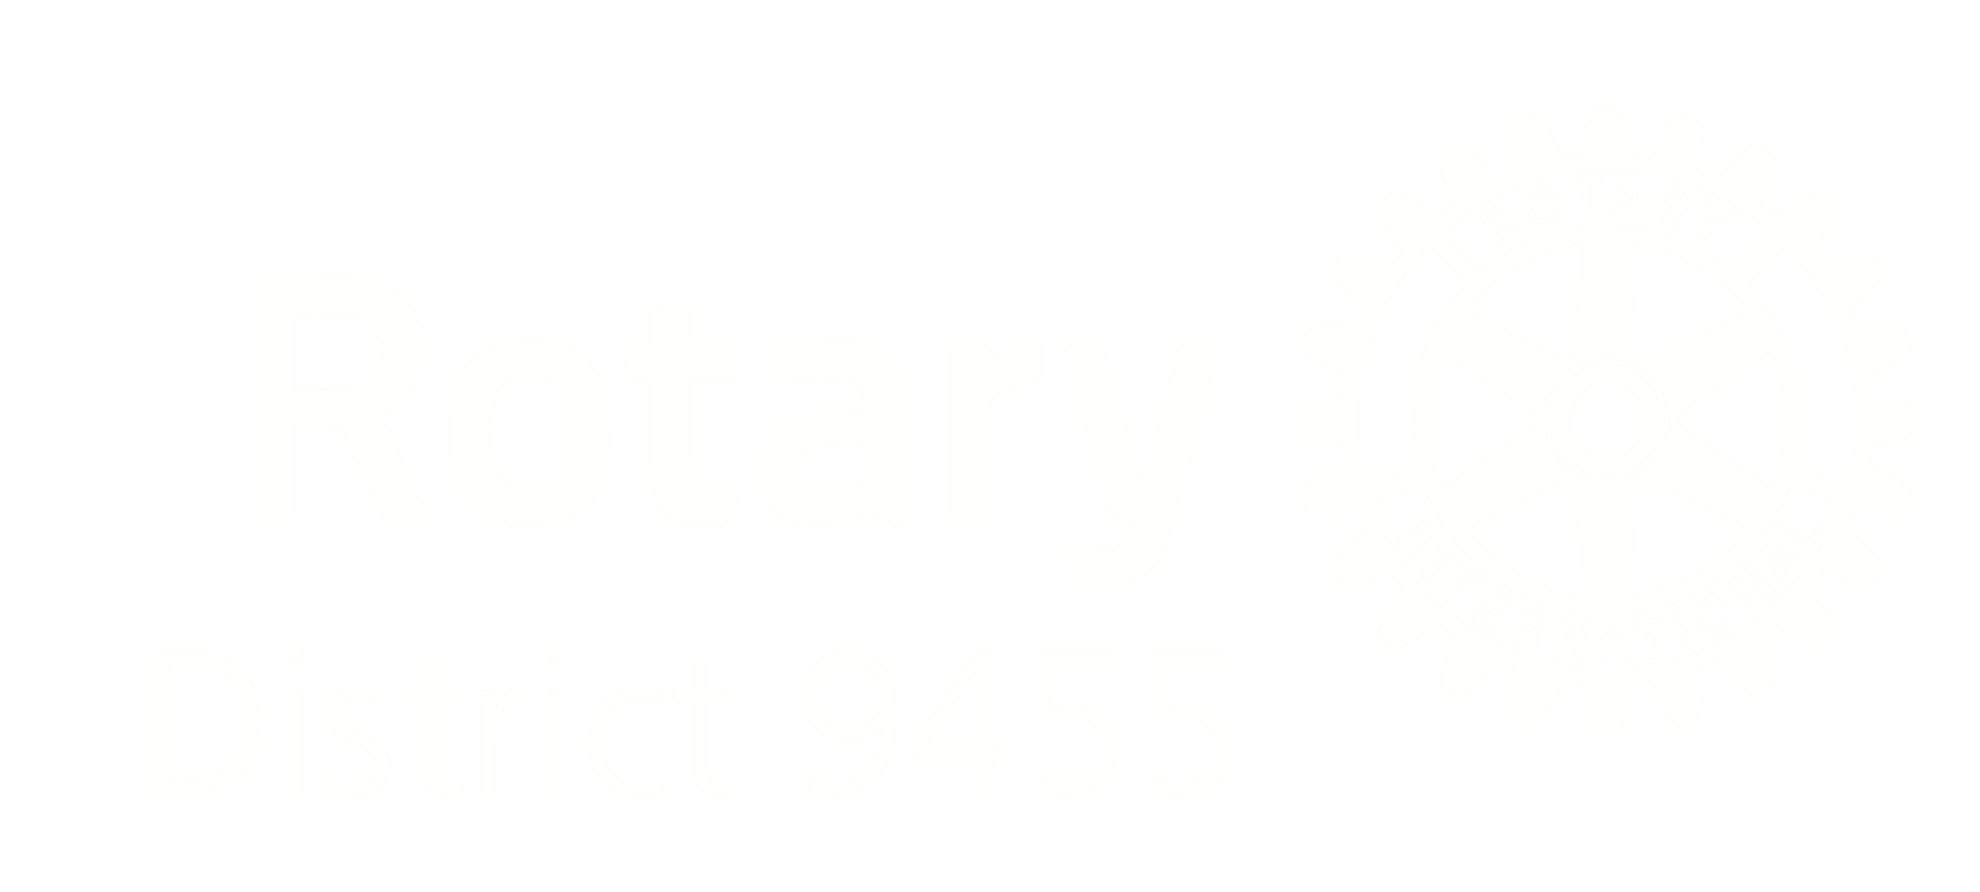 District 9455 logo